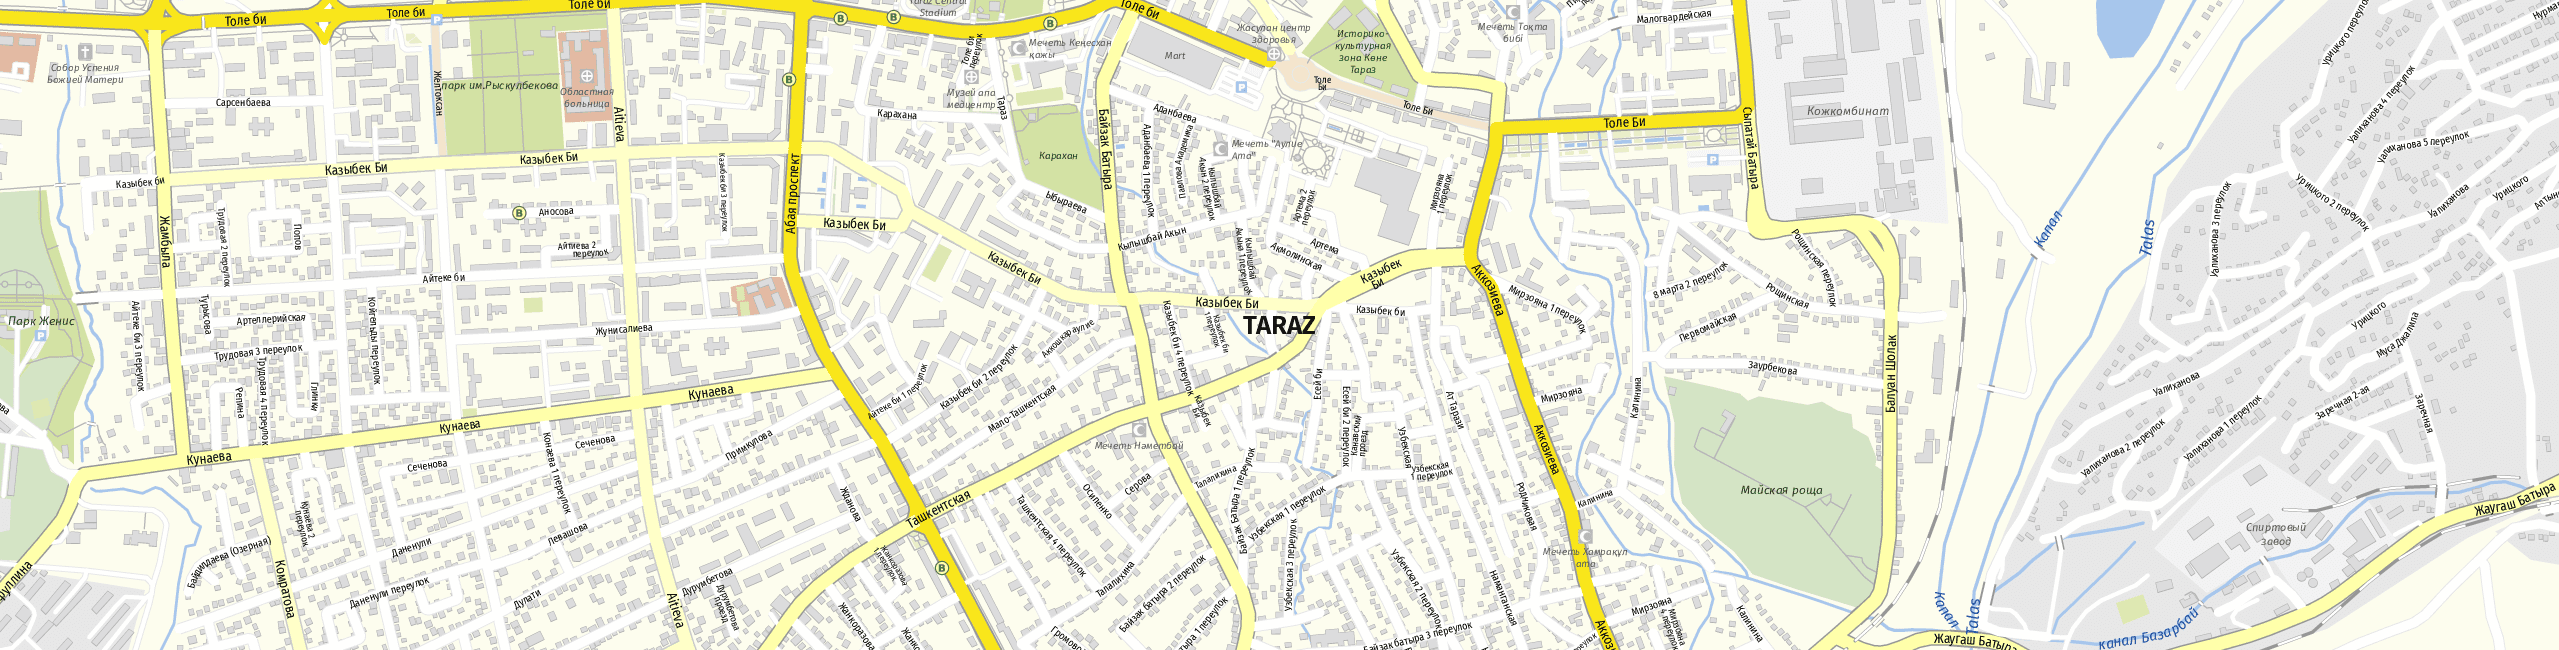 Stadtplan Taraz zum Downloaden.